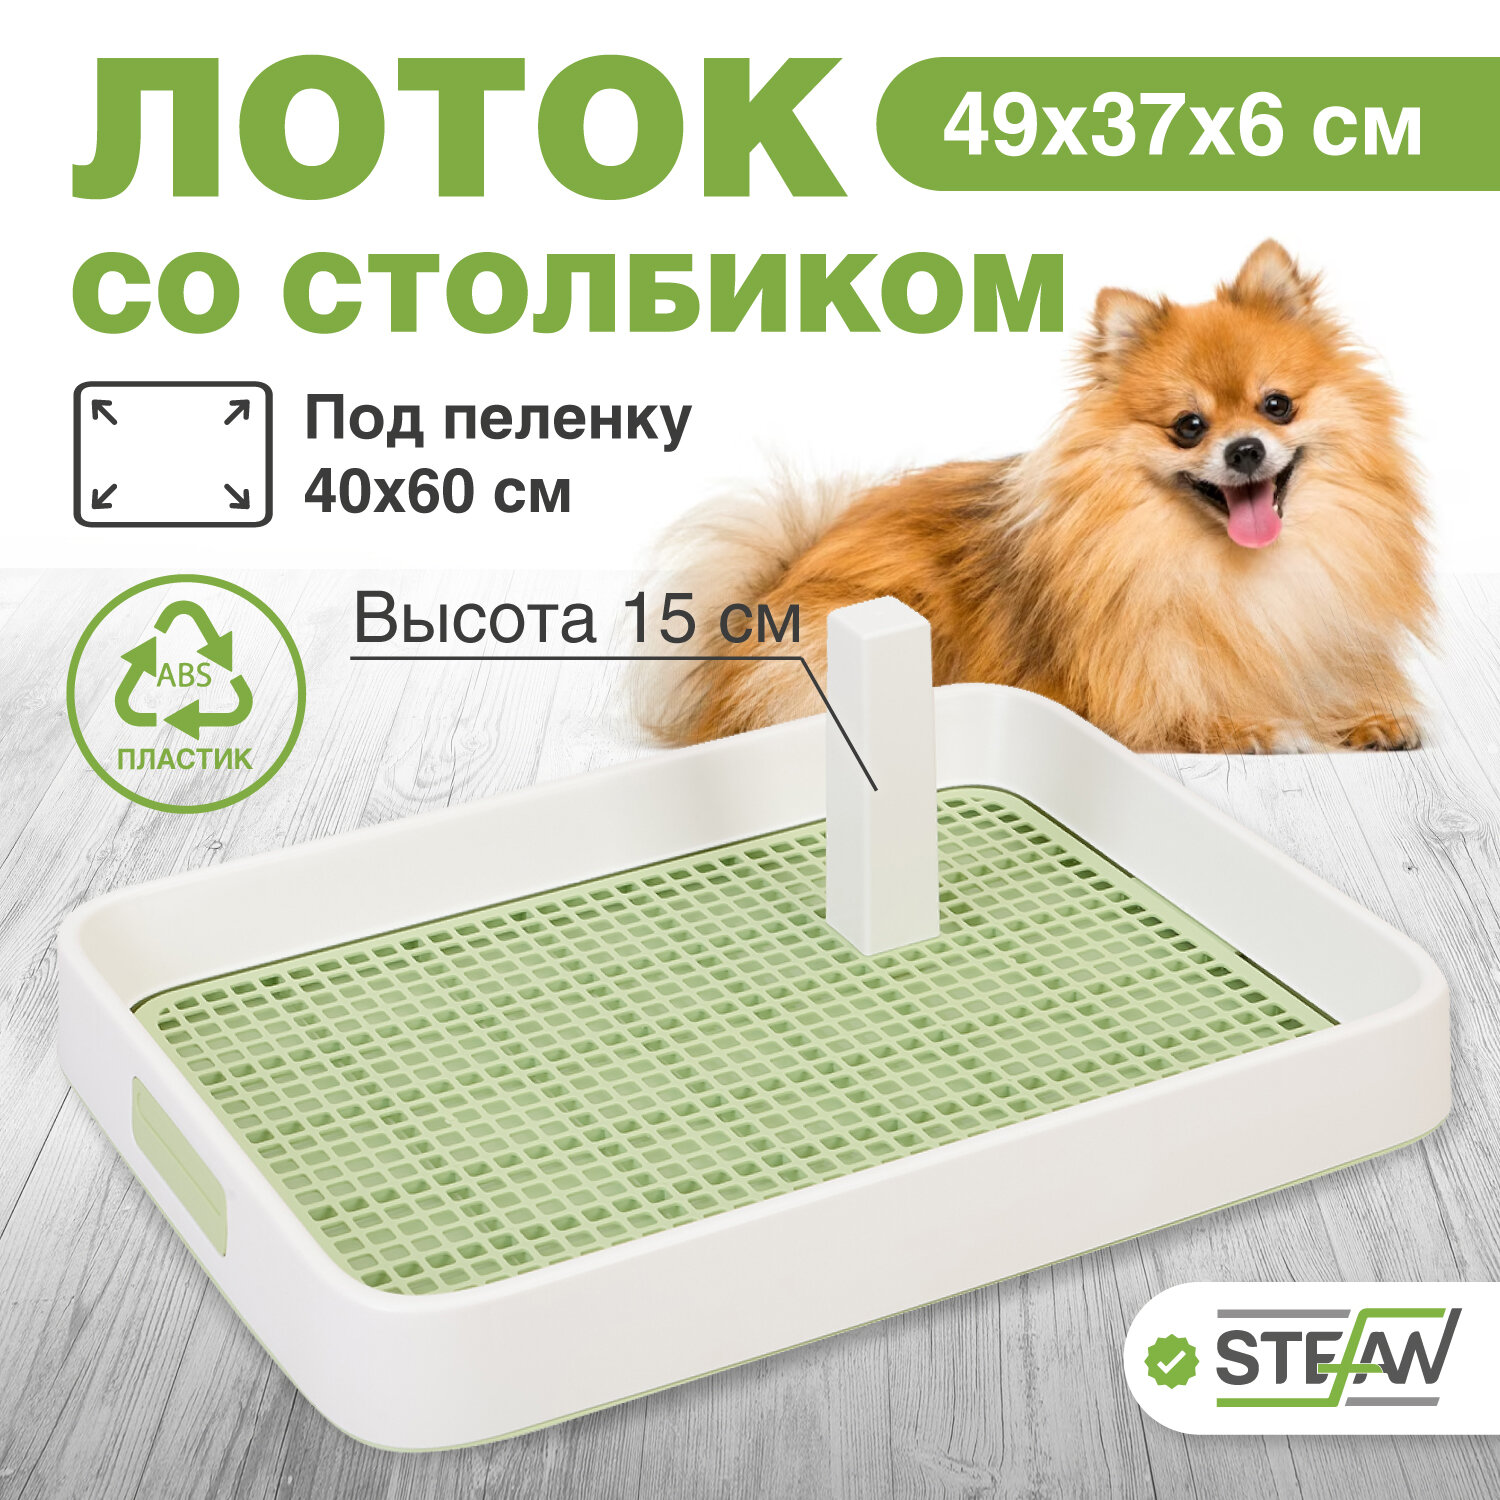 Туалет-лоток со столбиком и сеткой для собак и щенков STEFAN (Штефан) для малых и средних пород 49x37x6, Италия, зеленый, W01752